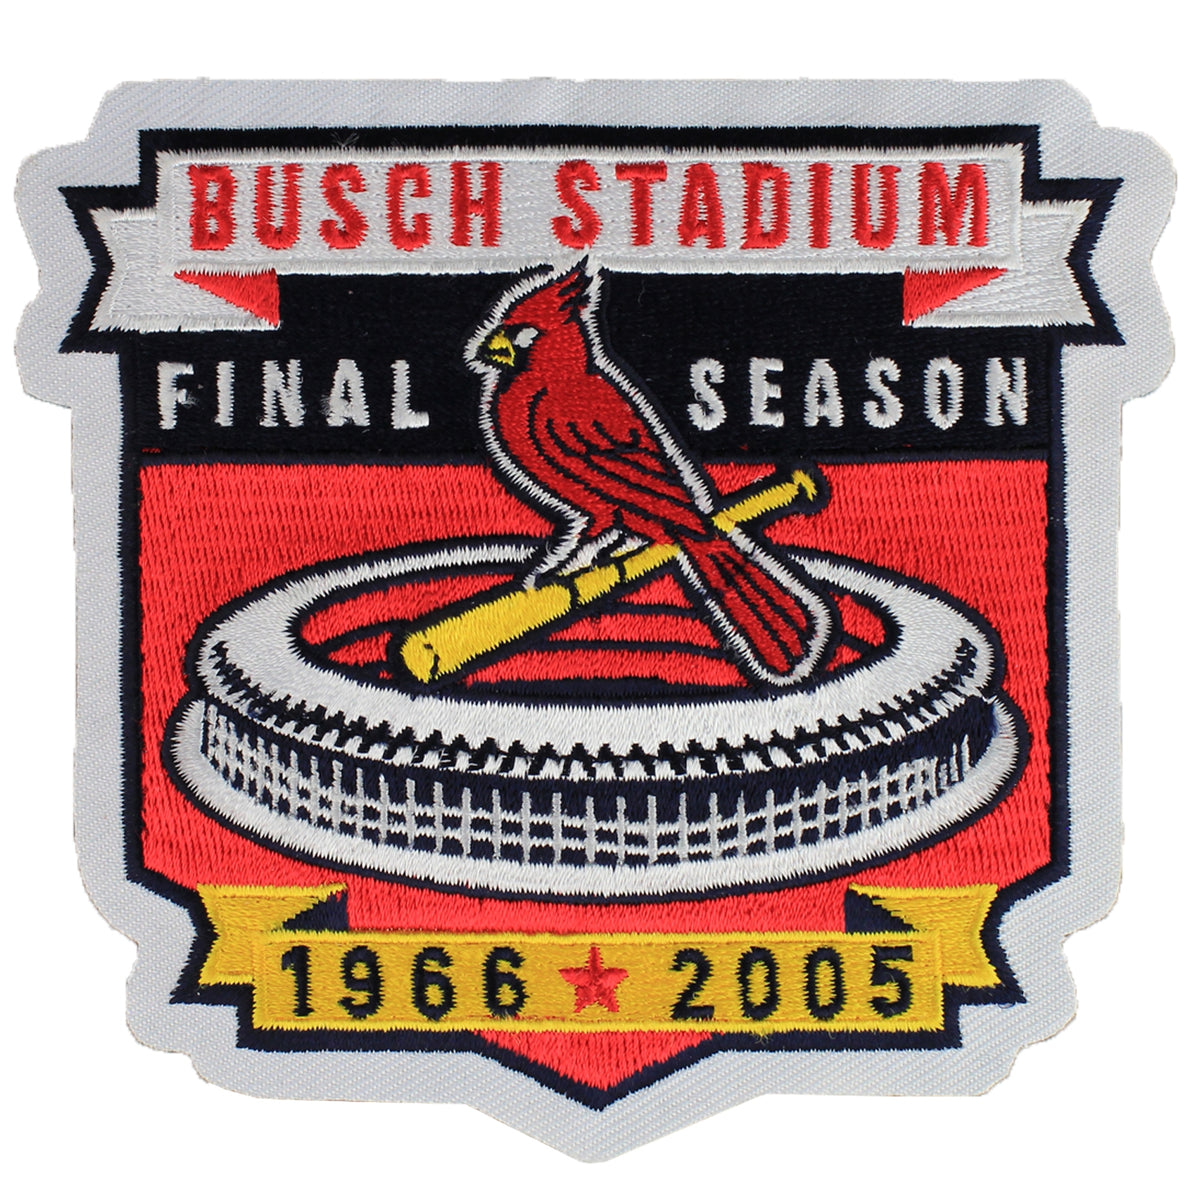 St. Louis Cardinals Final Season 2005 Patch (Busch Stadium)